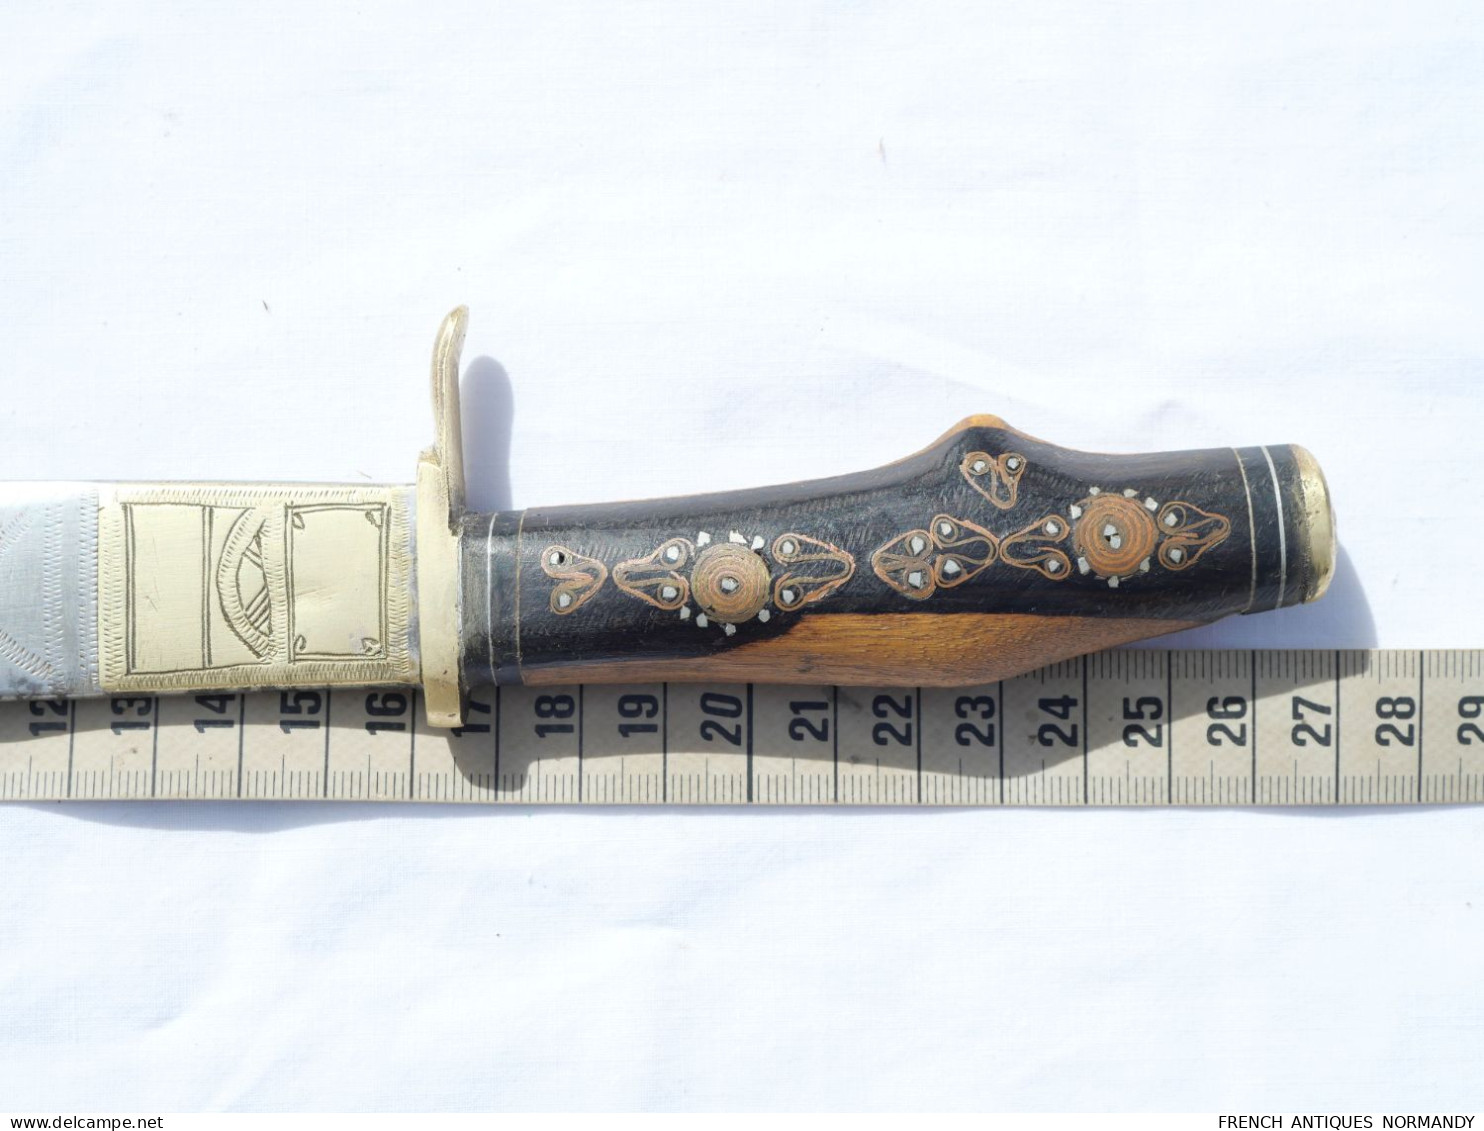 Couteau AFN - Afrique du Nord - époque guerre d'Algérie (souvenir)   Longueur lame 16 cm  Longueur totale du coutea